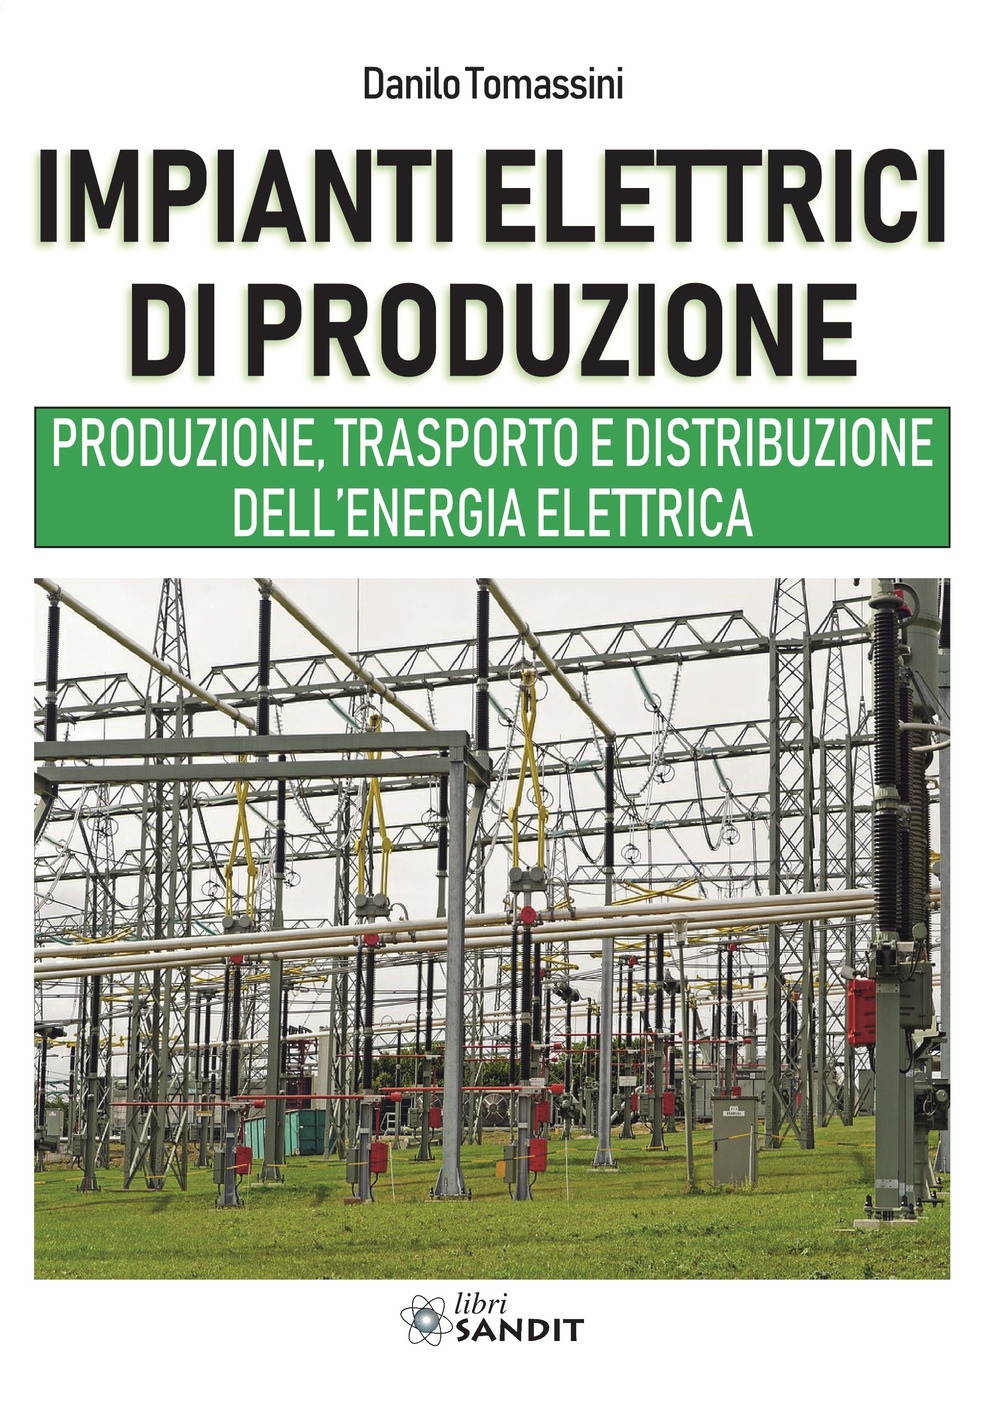 Impianti elettrici di produzione. Produzione, trasporto e distribuzione dell'energia